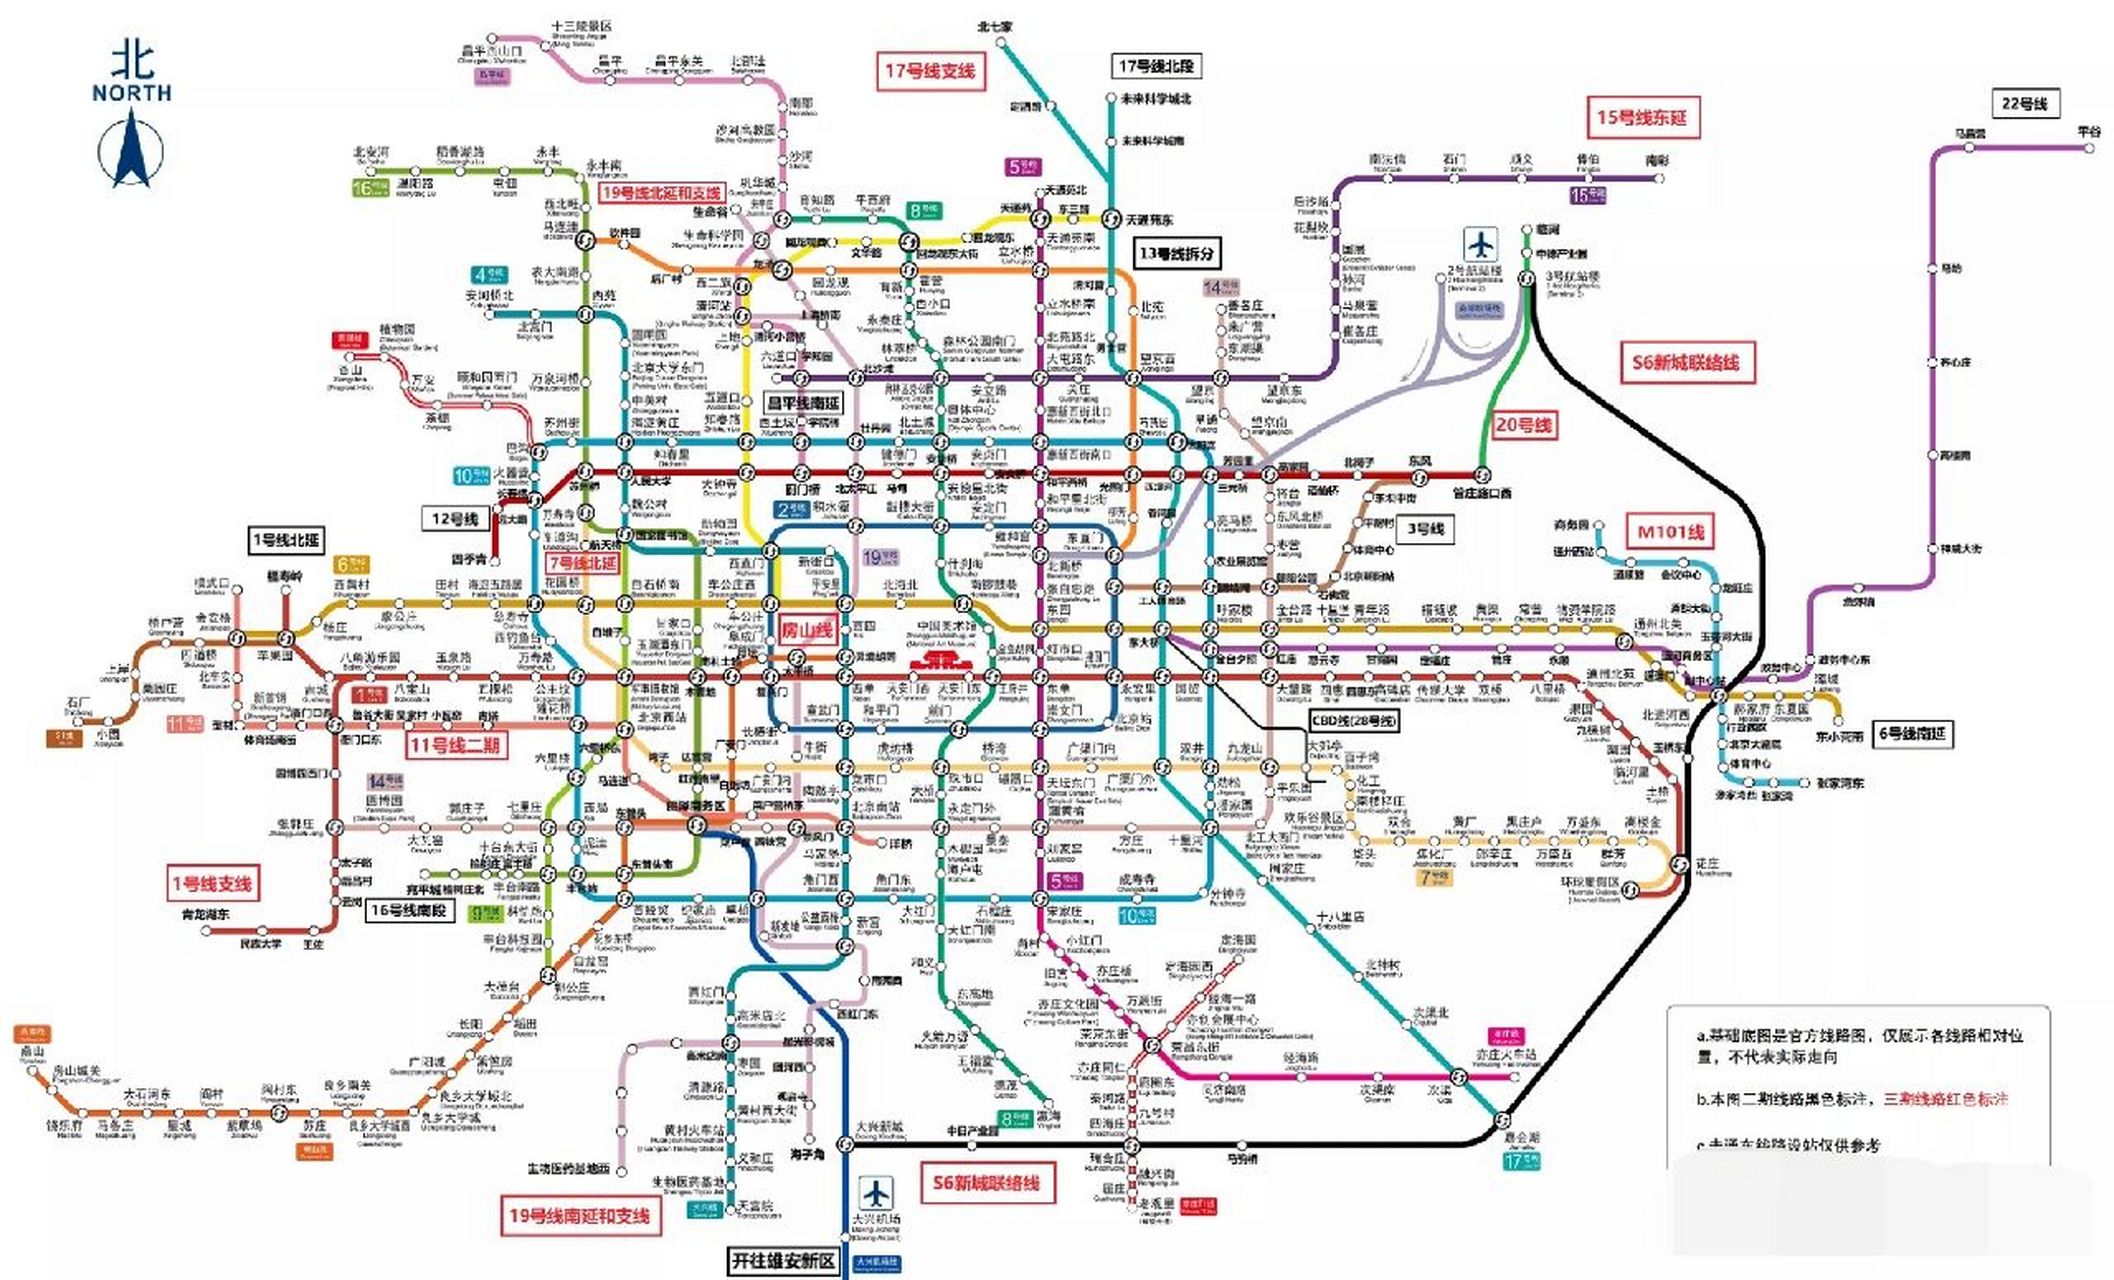 北京地铁线路图(最新整理) 路痴的我就靠它出行了,需要的小伙伴赶紧